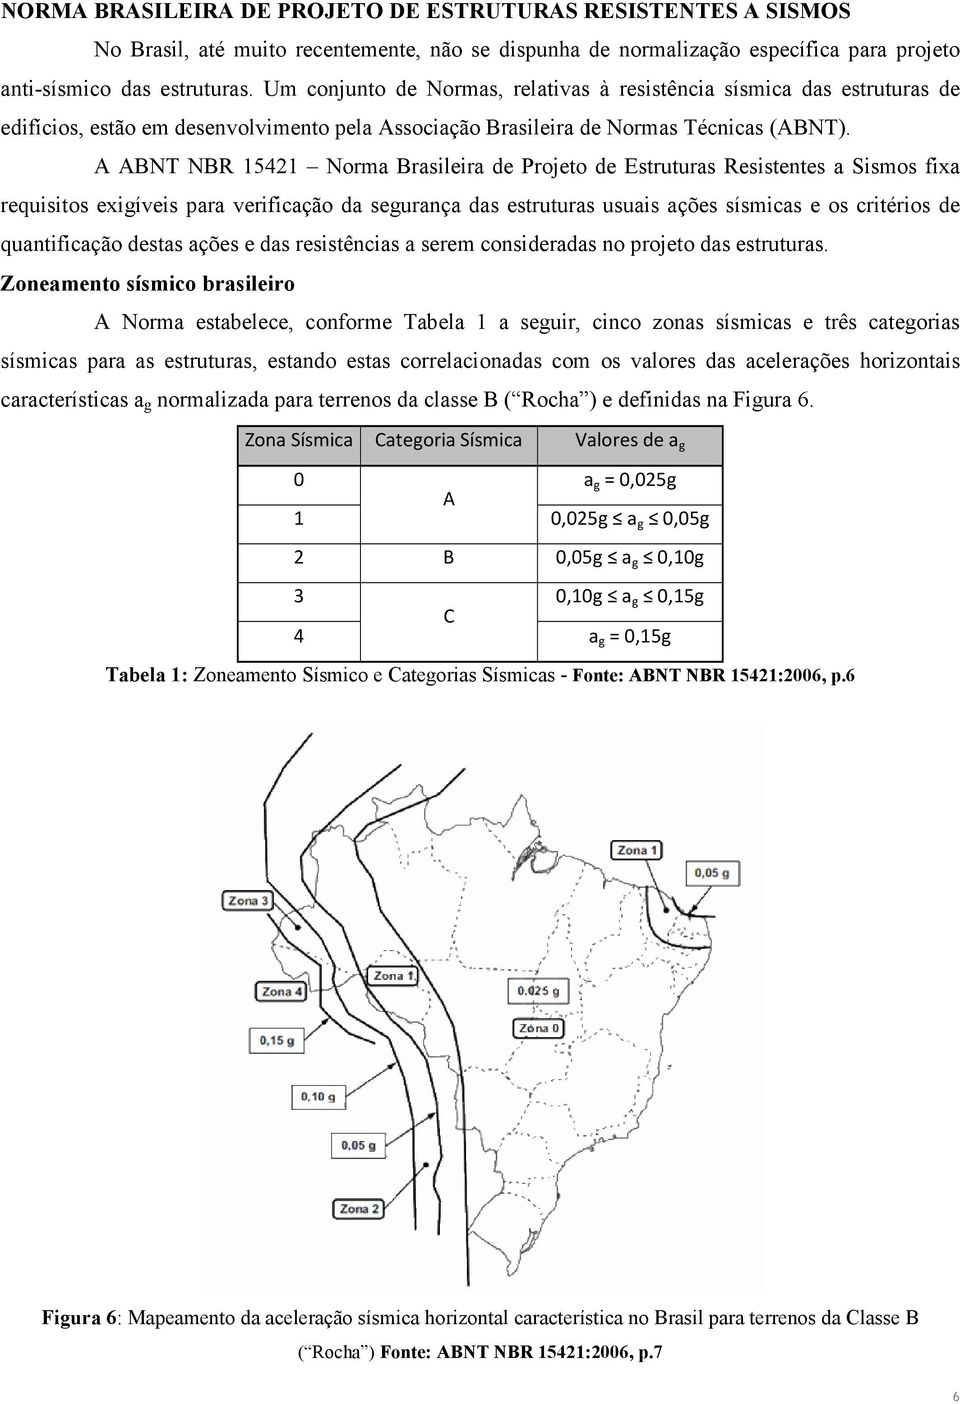 A ABNT NBR 15421 Norma Brasileira de Projeto de Estruturas Resistentes a Sismos fixa requisitos exigíveis para verificação da segurança das estruturas usuais ações sísmicas e os critérios de